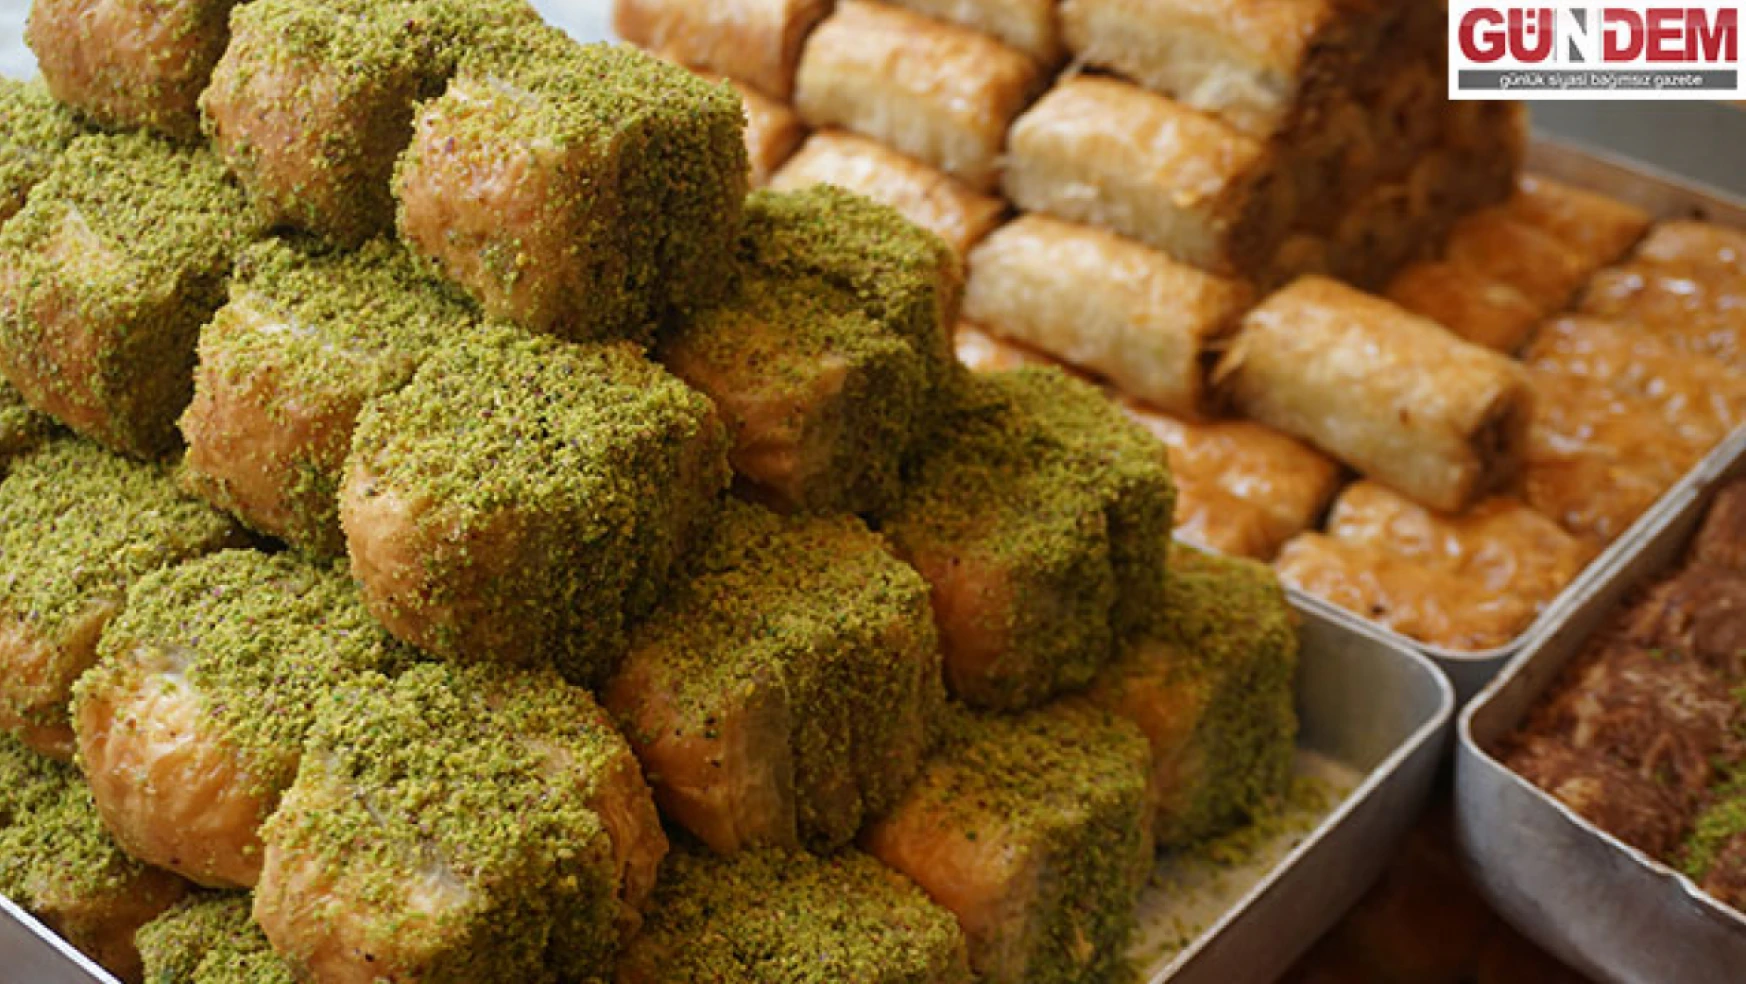 Ramazan Bayramı'na sayılı günler kala tatlıcılar en güzel baklavaları hazırlayıp tezgahlara yerleştirdi